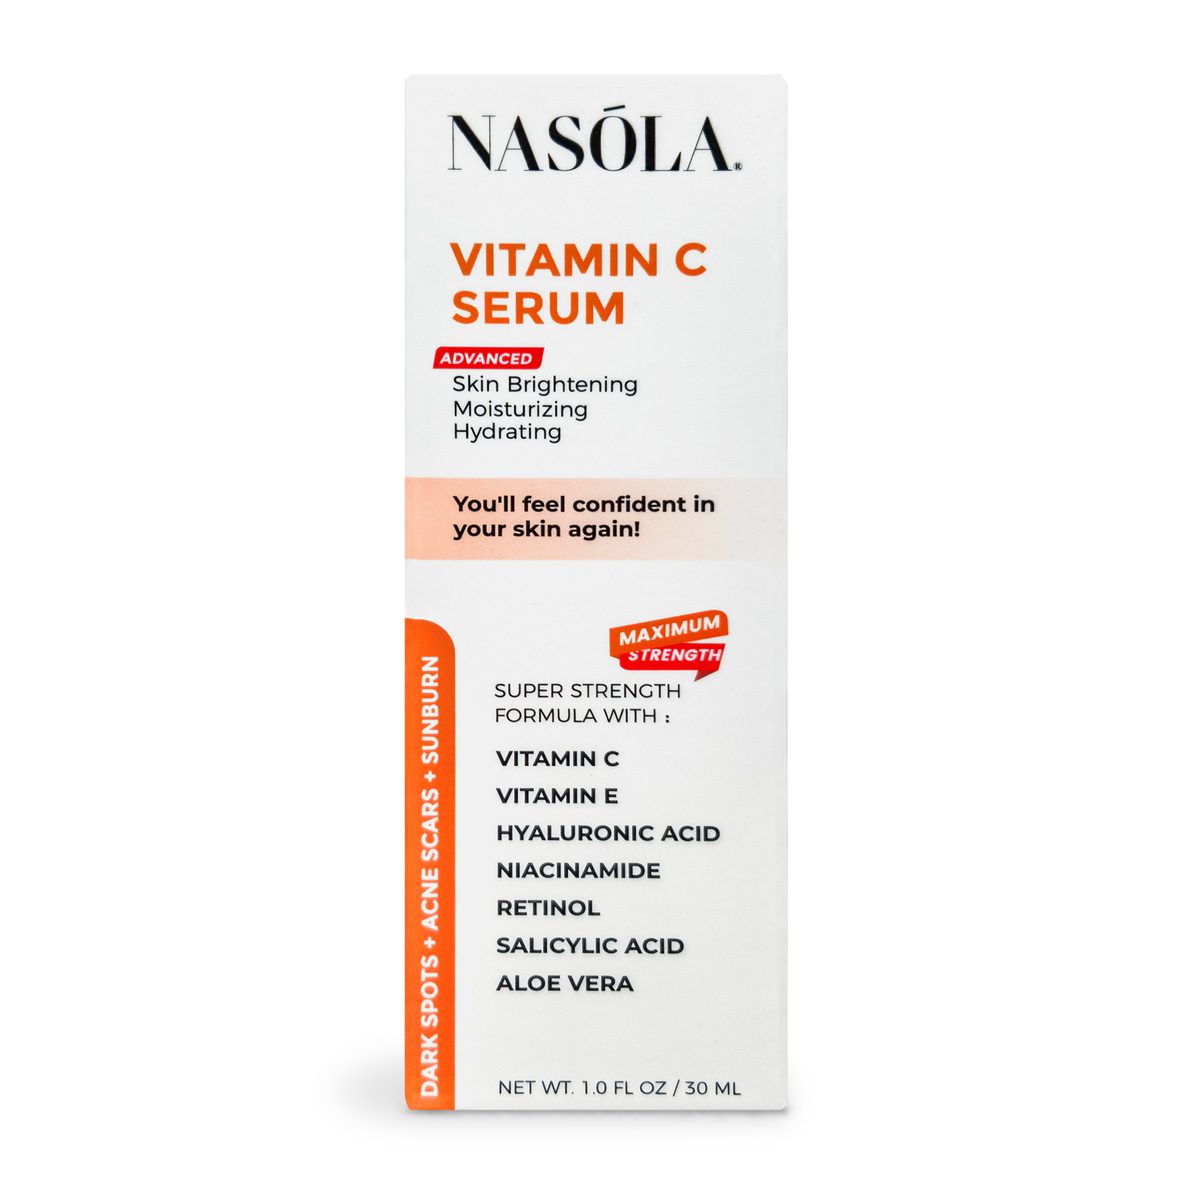 Nasola Vitamin C Serum